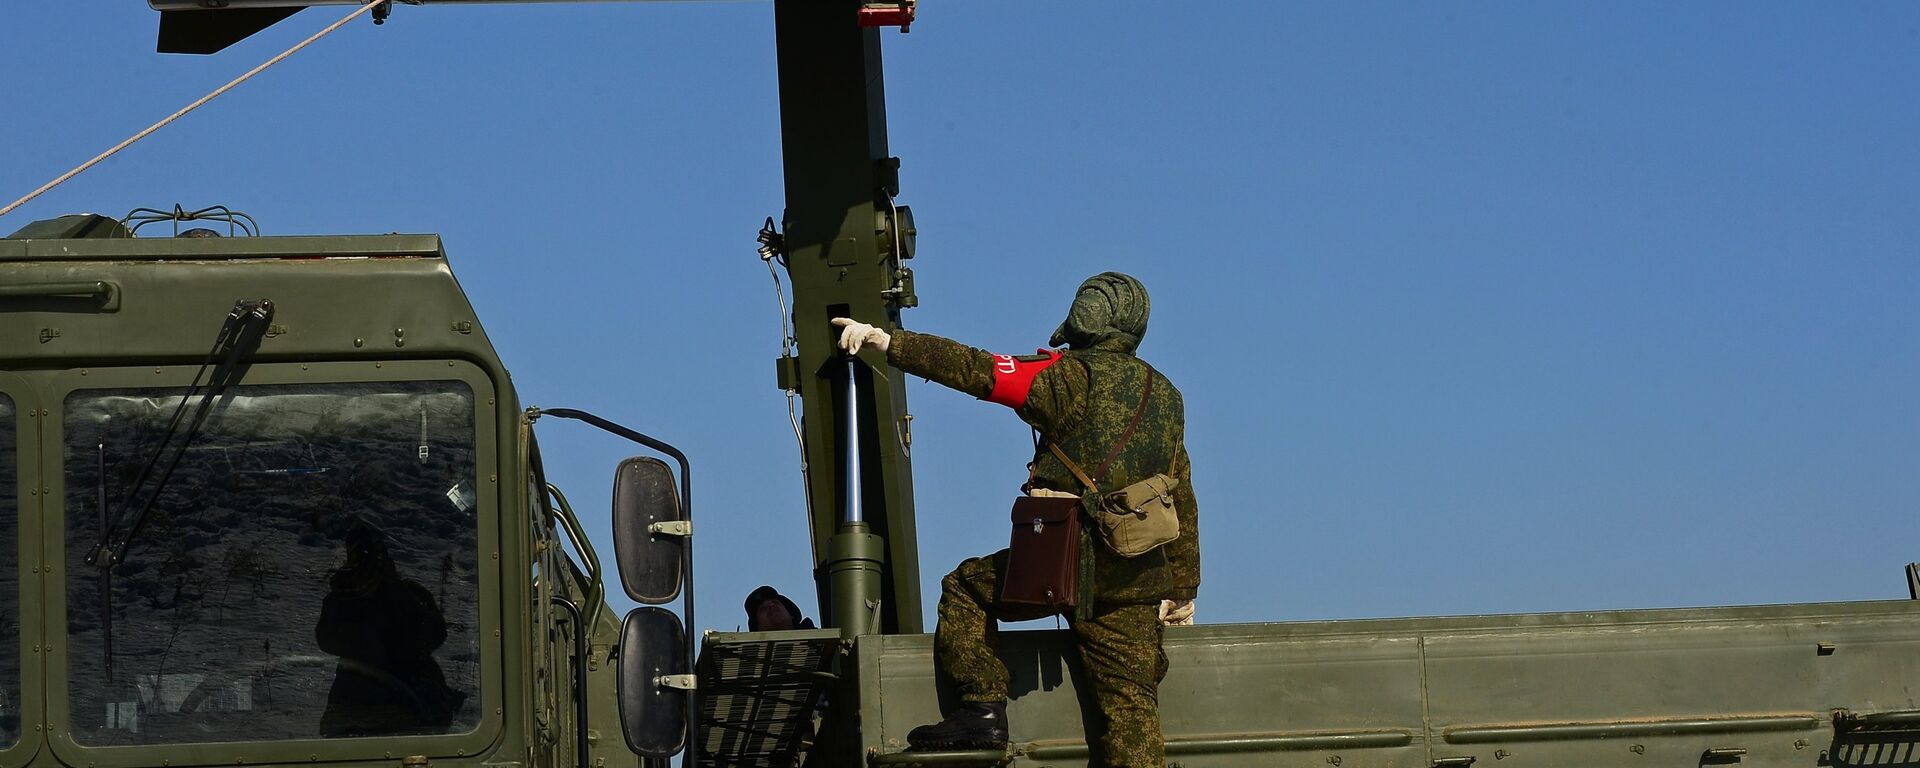 Загрузка ракеты транспортно-заряжающий машиной на самоходную пусковую установку оперативно-тактического ракетного комплекса Искандер-М - Sputnik Латвия, 1920, 15.06.2020